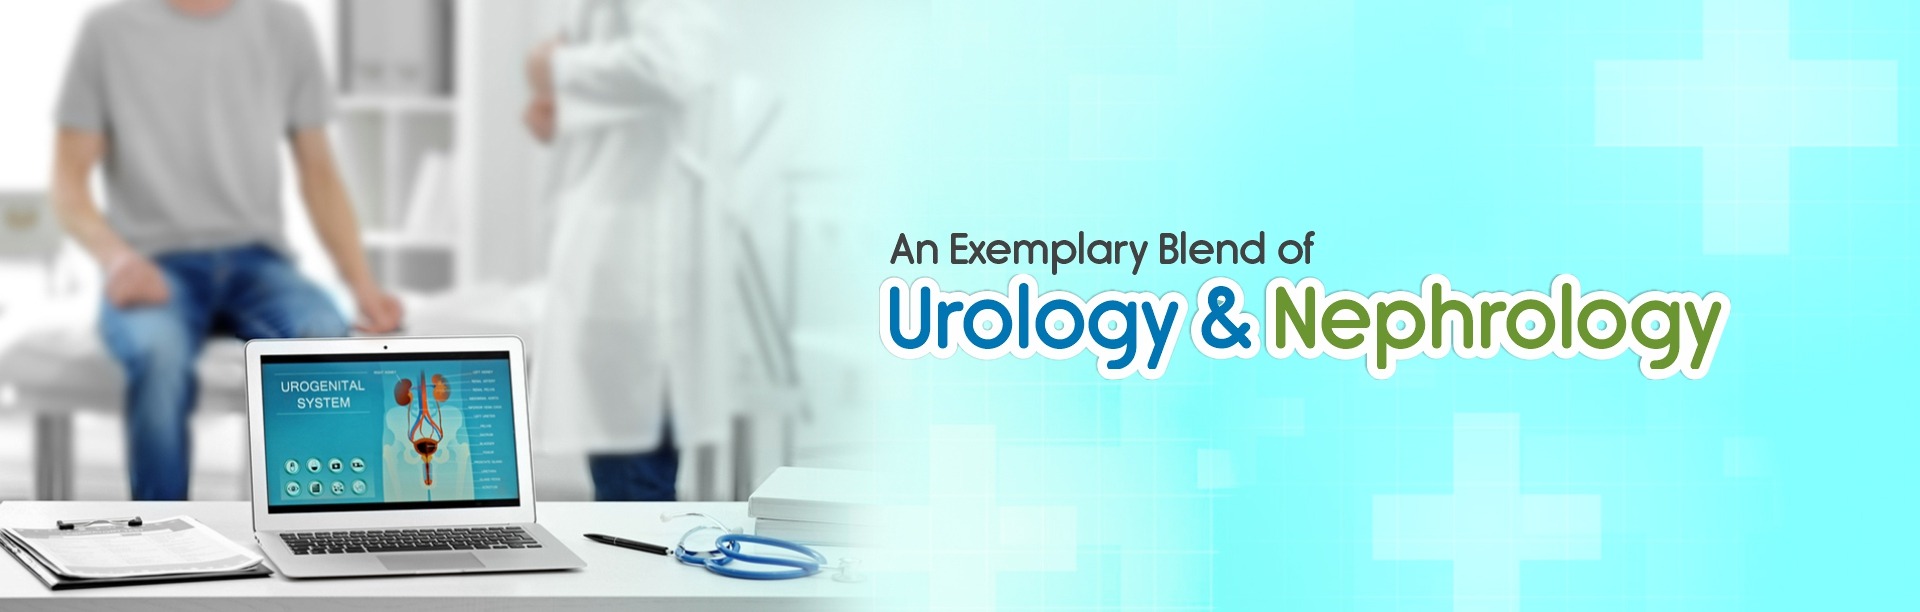 Centre of Excellence for urology & nephrology kidney hospital in Delhi